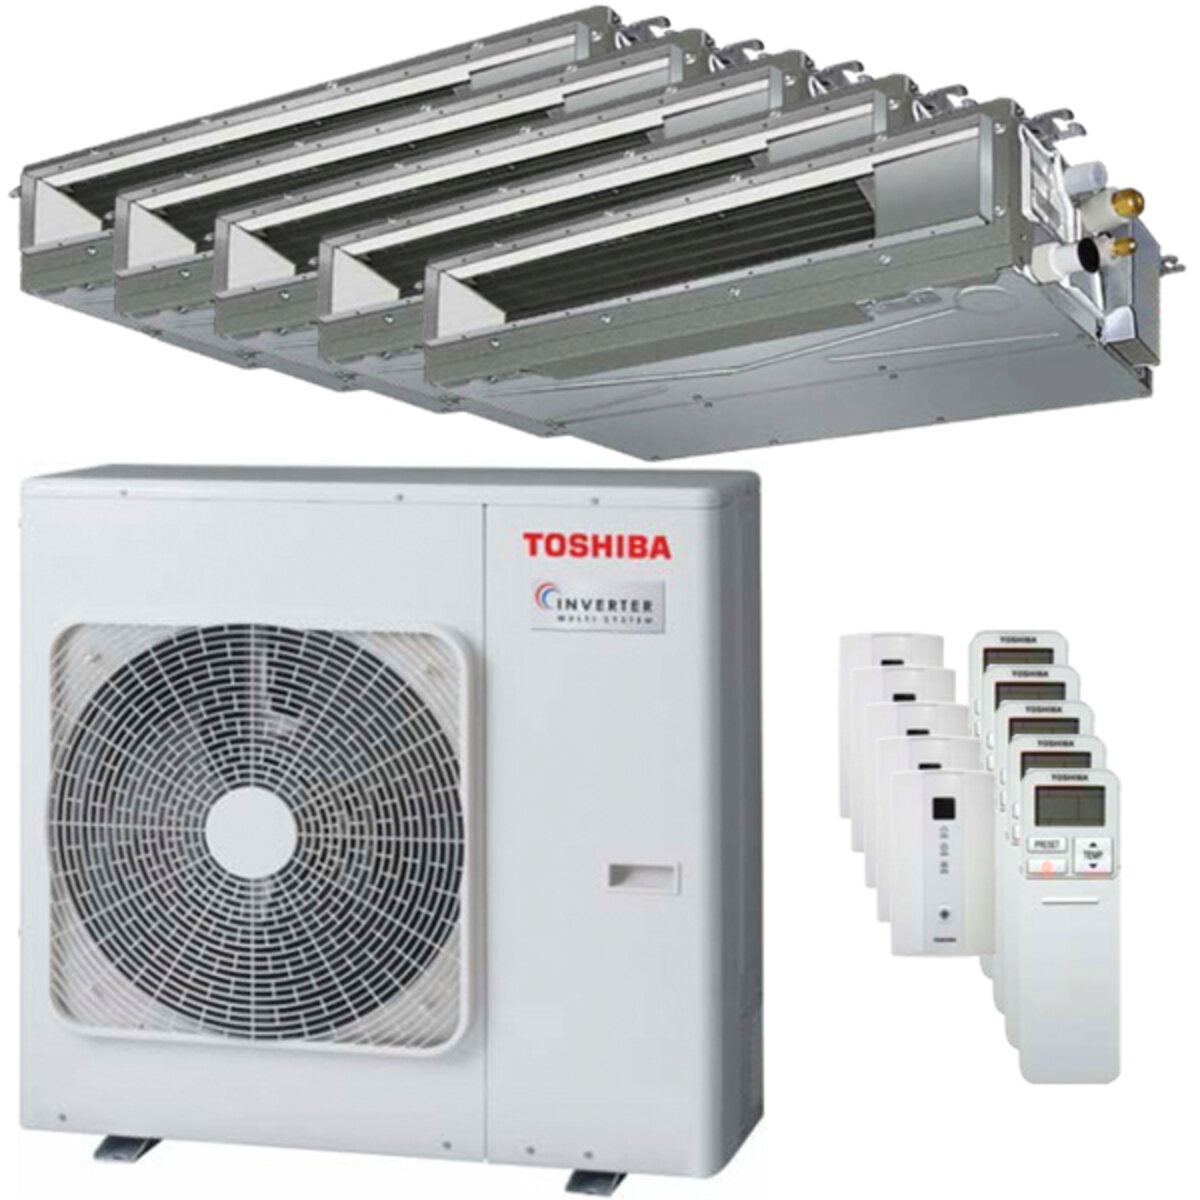 Toshiba Ductable Air Conditioner U2 Pentasplit 9000 + 9000 + 9000 + 9000 + 9000 BTU Inverter A++ Außengerät 10,0 kW